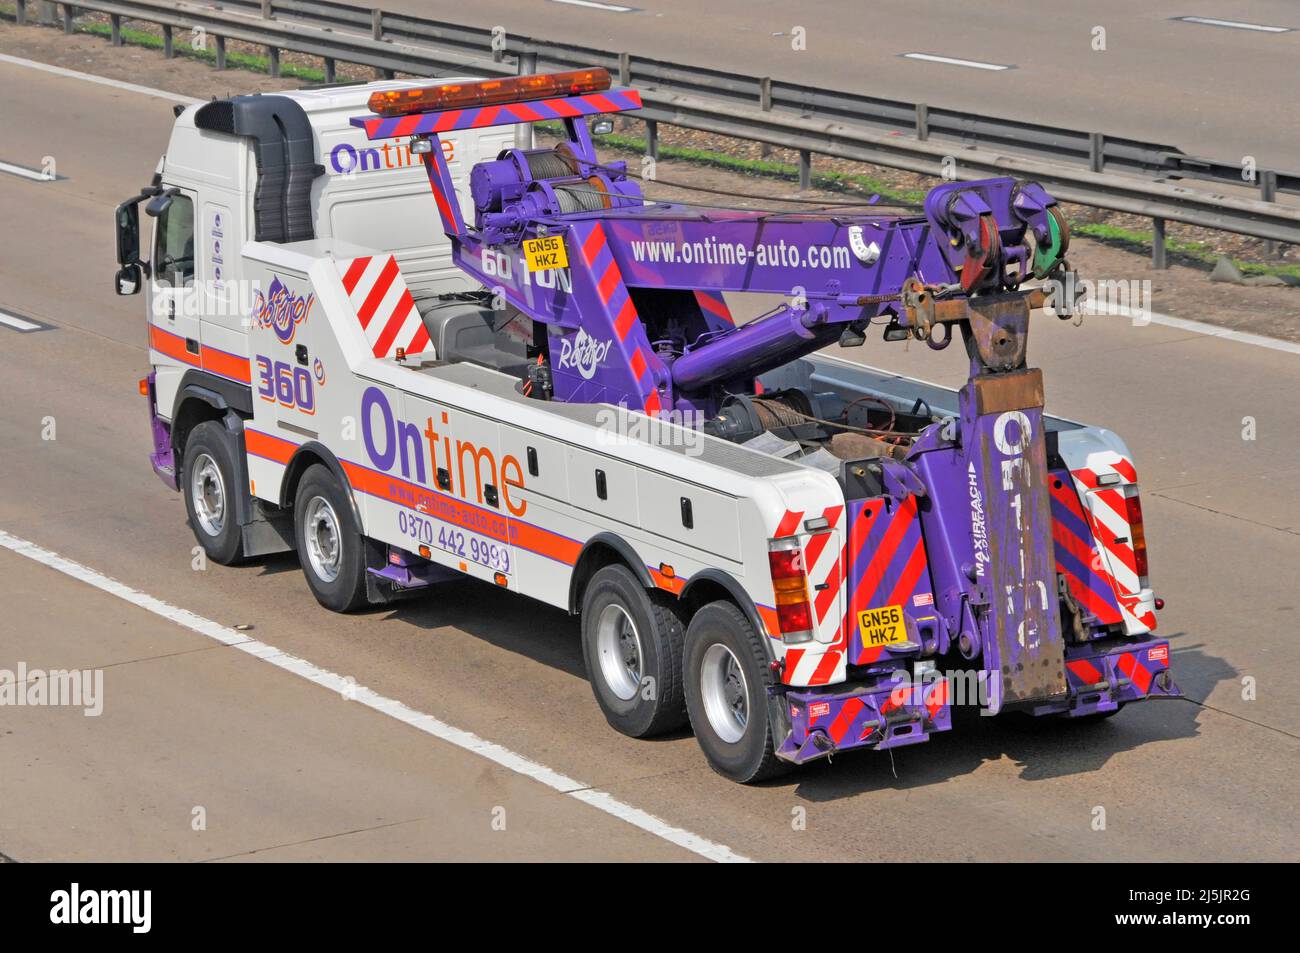 Vista posteriore e laterale aerea del colorato OnTime auto hgv sollevamento pesante guasto recupero camion veicolo guida lungo autostrada strada Inghilterra UK Foto Stock